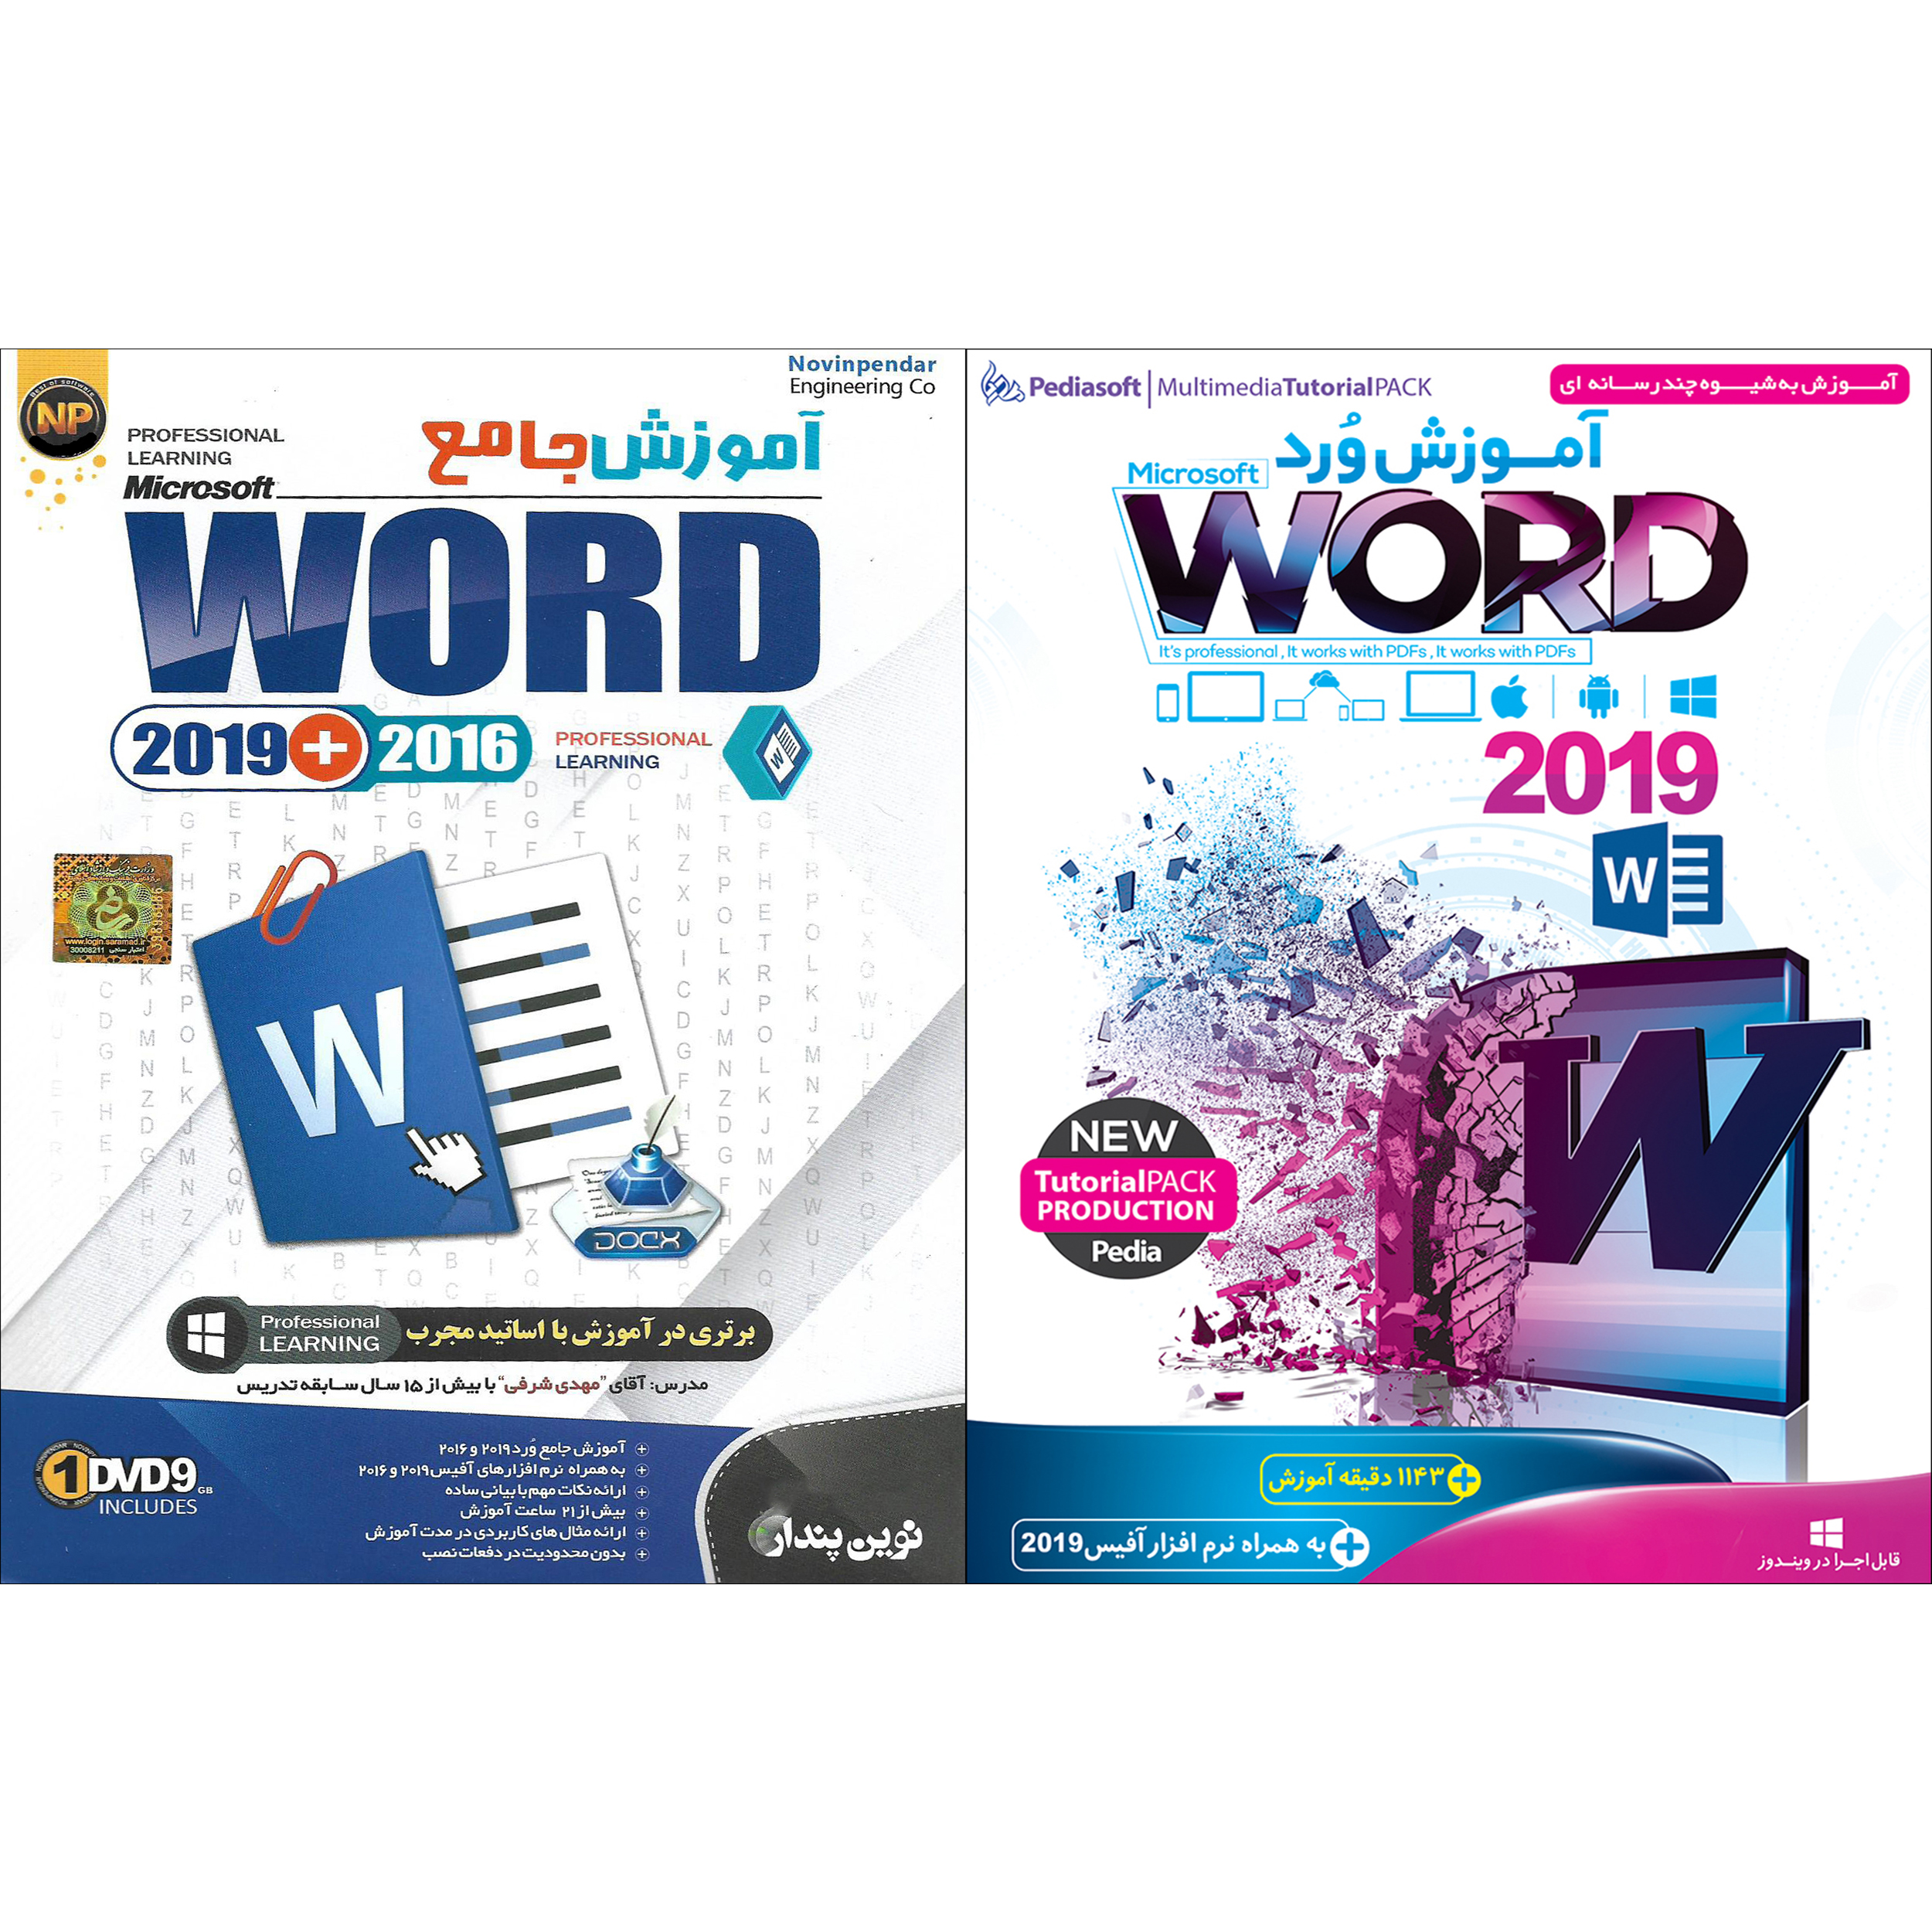 نرم افزار آموزش ورد WORD 2019 نشر پدیا سافت به همراه نرم افزار آموزش WORD 2019 نشر نوین پندار